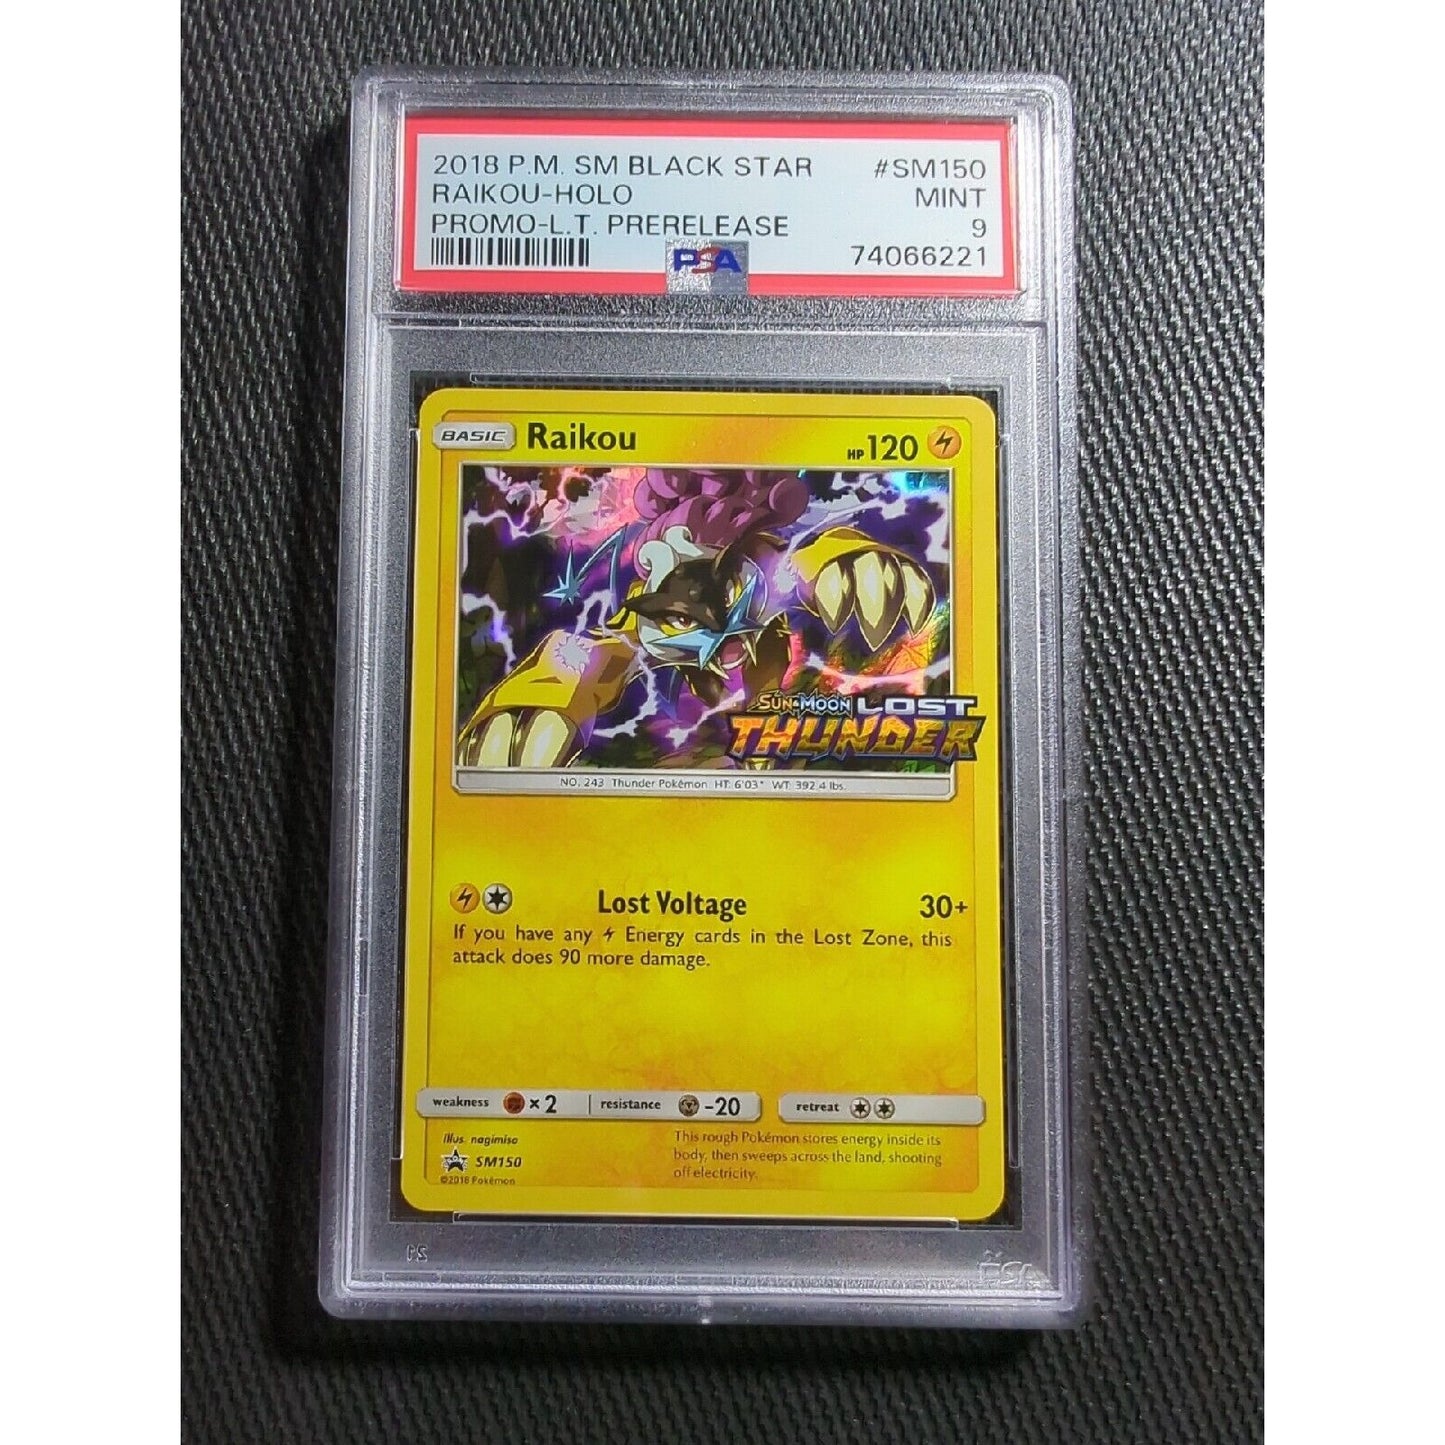 PSA 9 - Raikou SM150 - Prerelease Stamped Holo - 2018 Lost Thunder - Pokemon